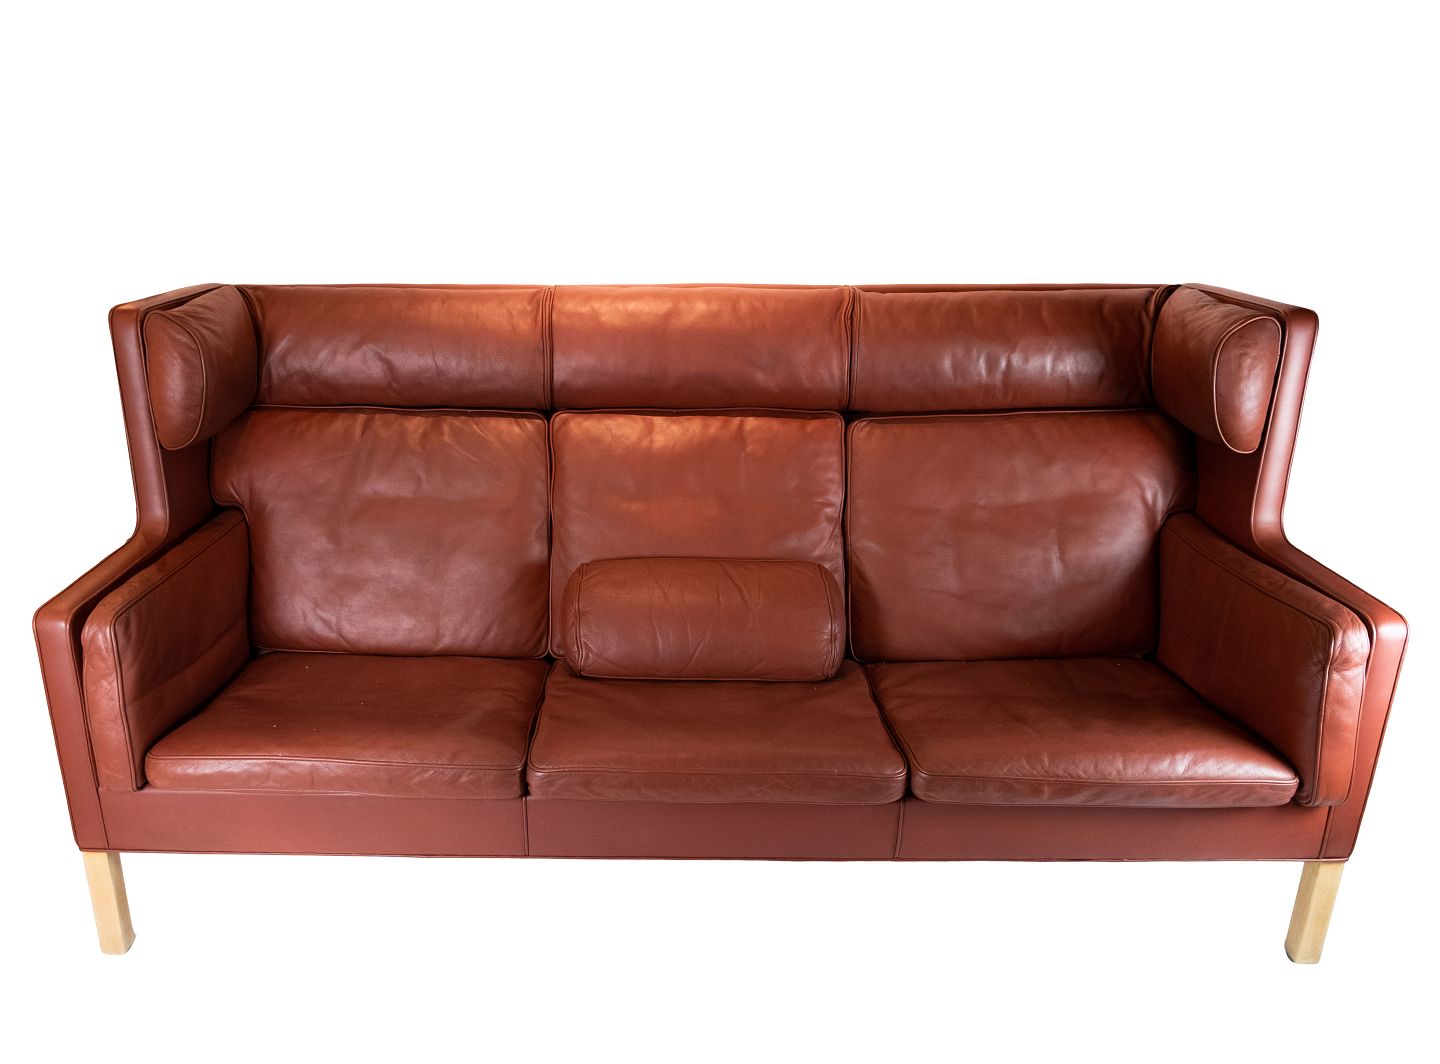 Sobriquette overdrive Brøl Kupe 3 personers sofa, model 2193, af Børge Mogensen og Fredericia  Furniture. * - Osted Antik & Design